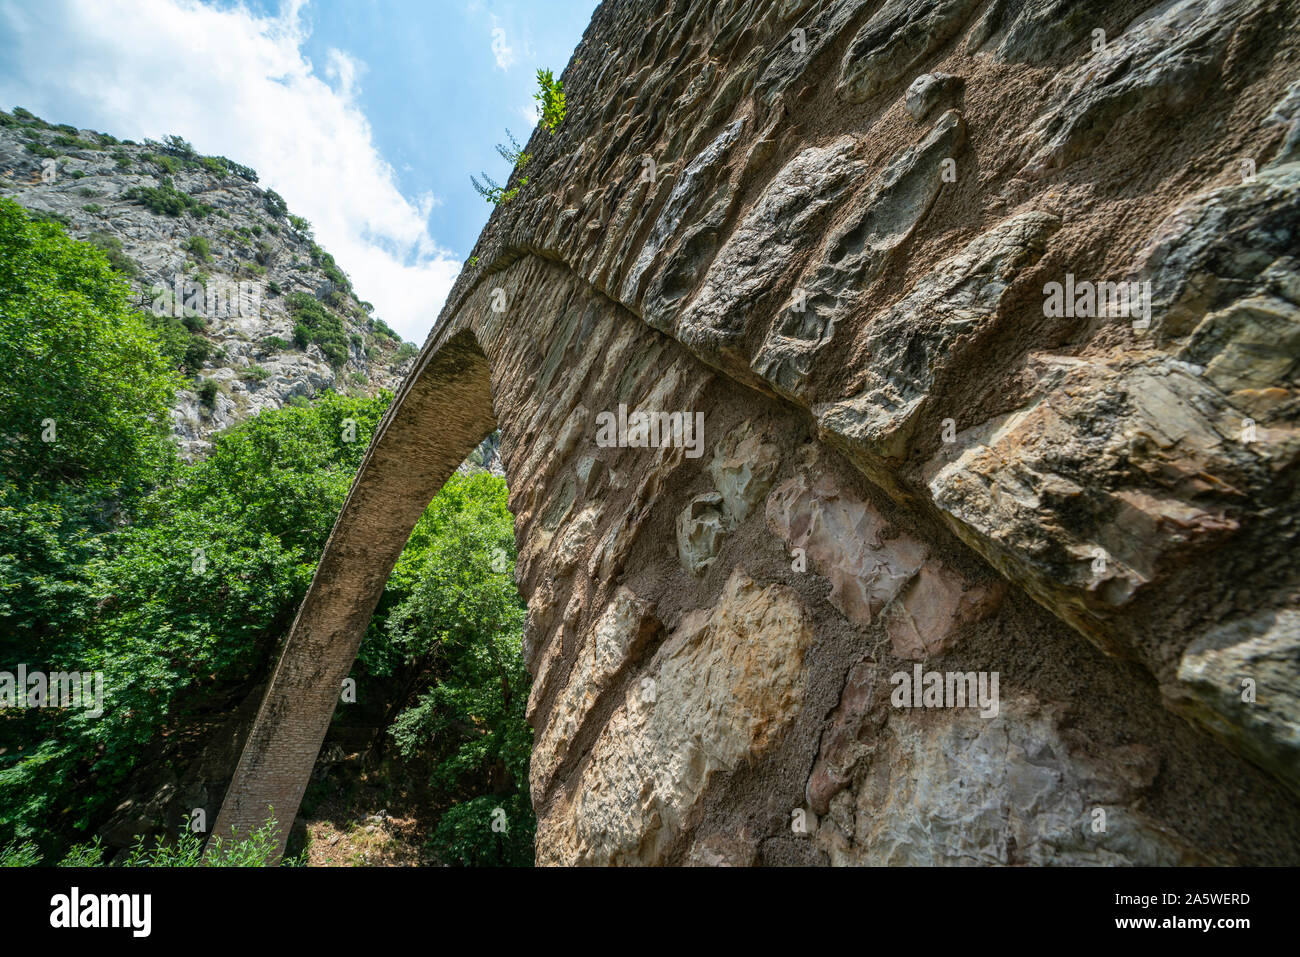 Angolo basso punto di vista della struttura e arco di pietra storica unica arcata del ponte pedonale a Zagori in Pindo in Grecia centrale. Foto Stock